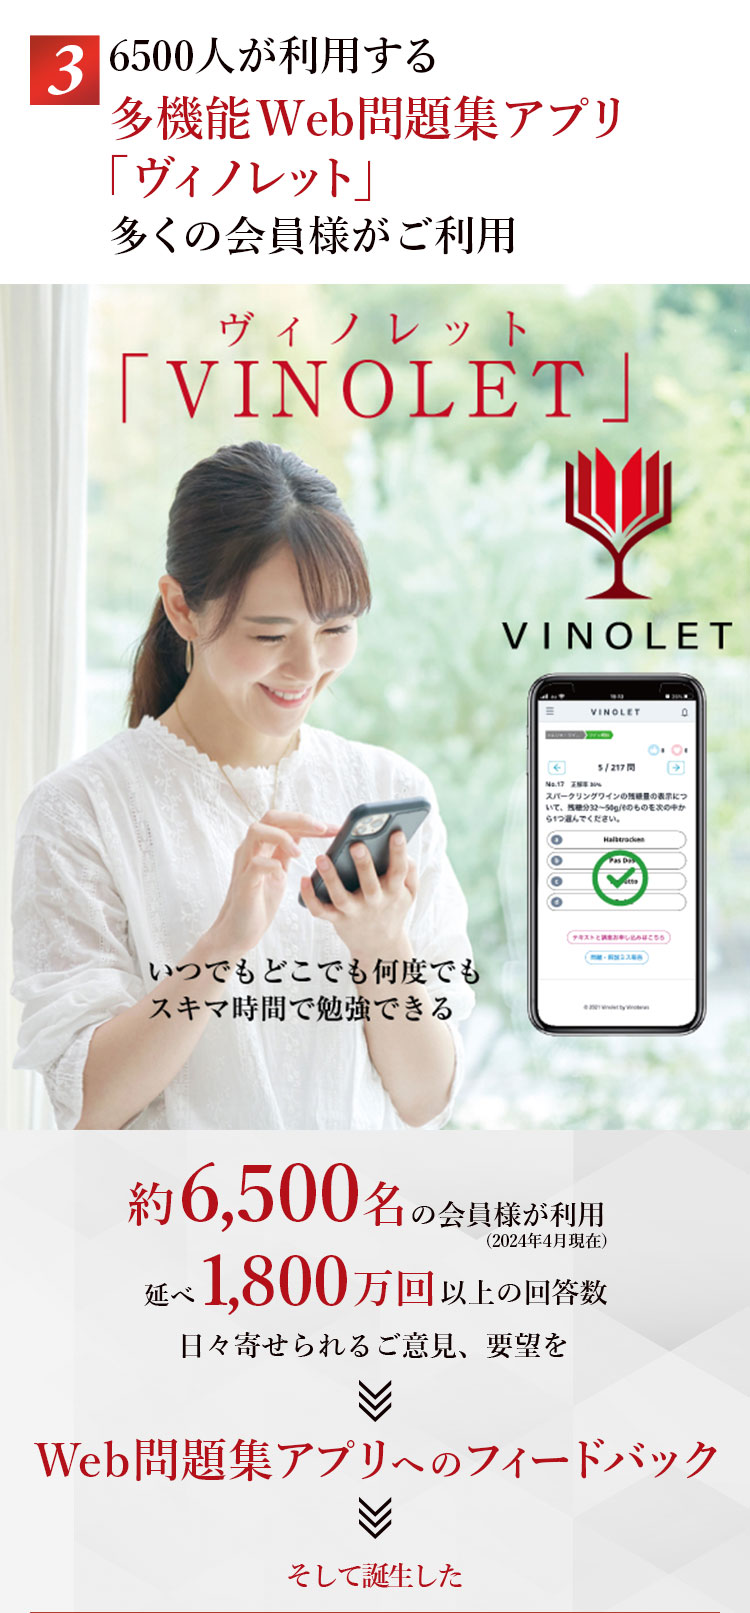 6500人が利用する多機能WEB問題集アプリ「ヴィノレット」多くの会員様がご利用